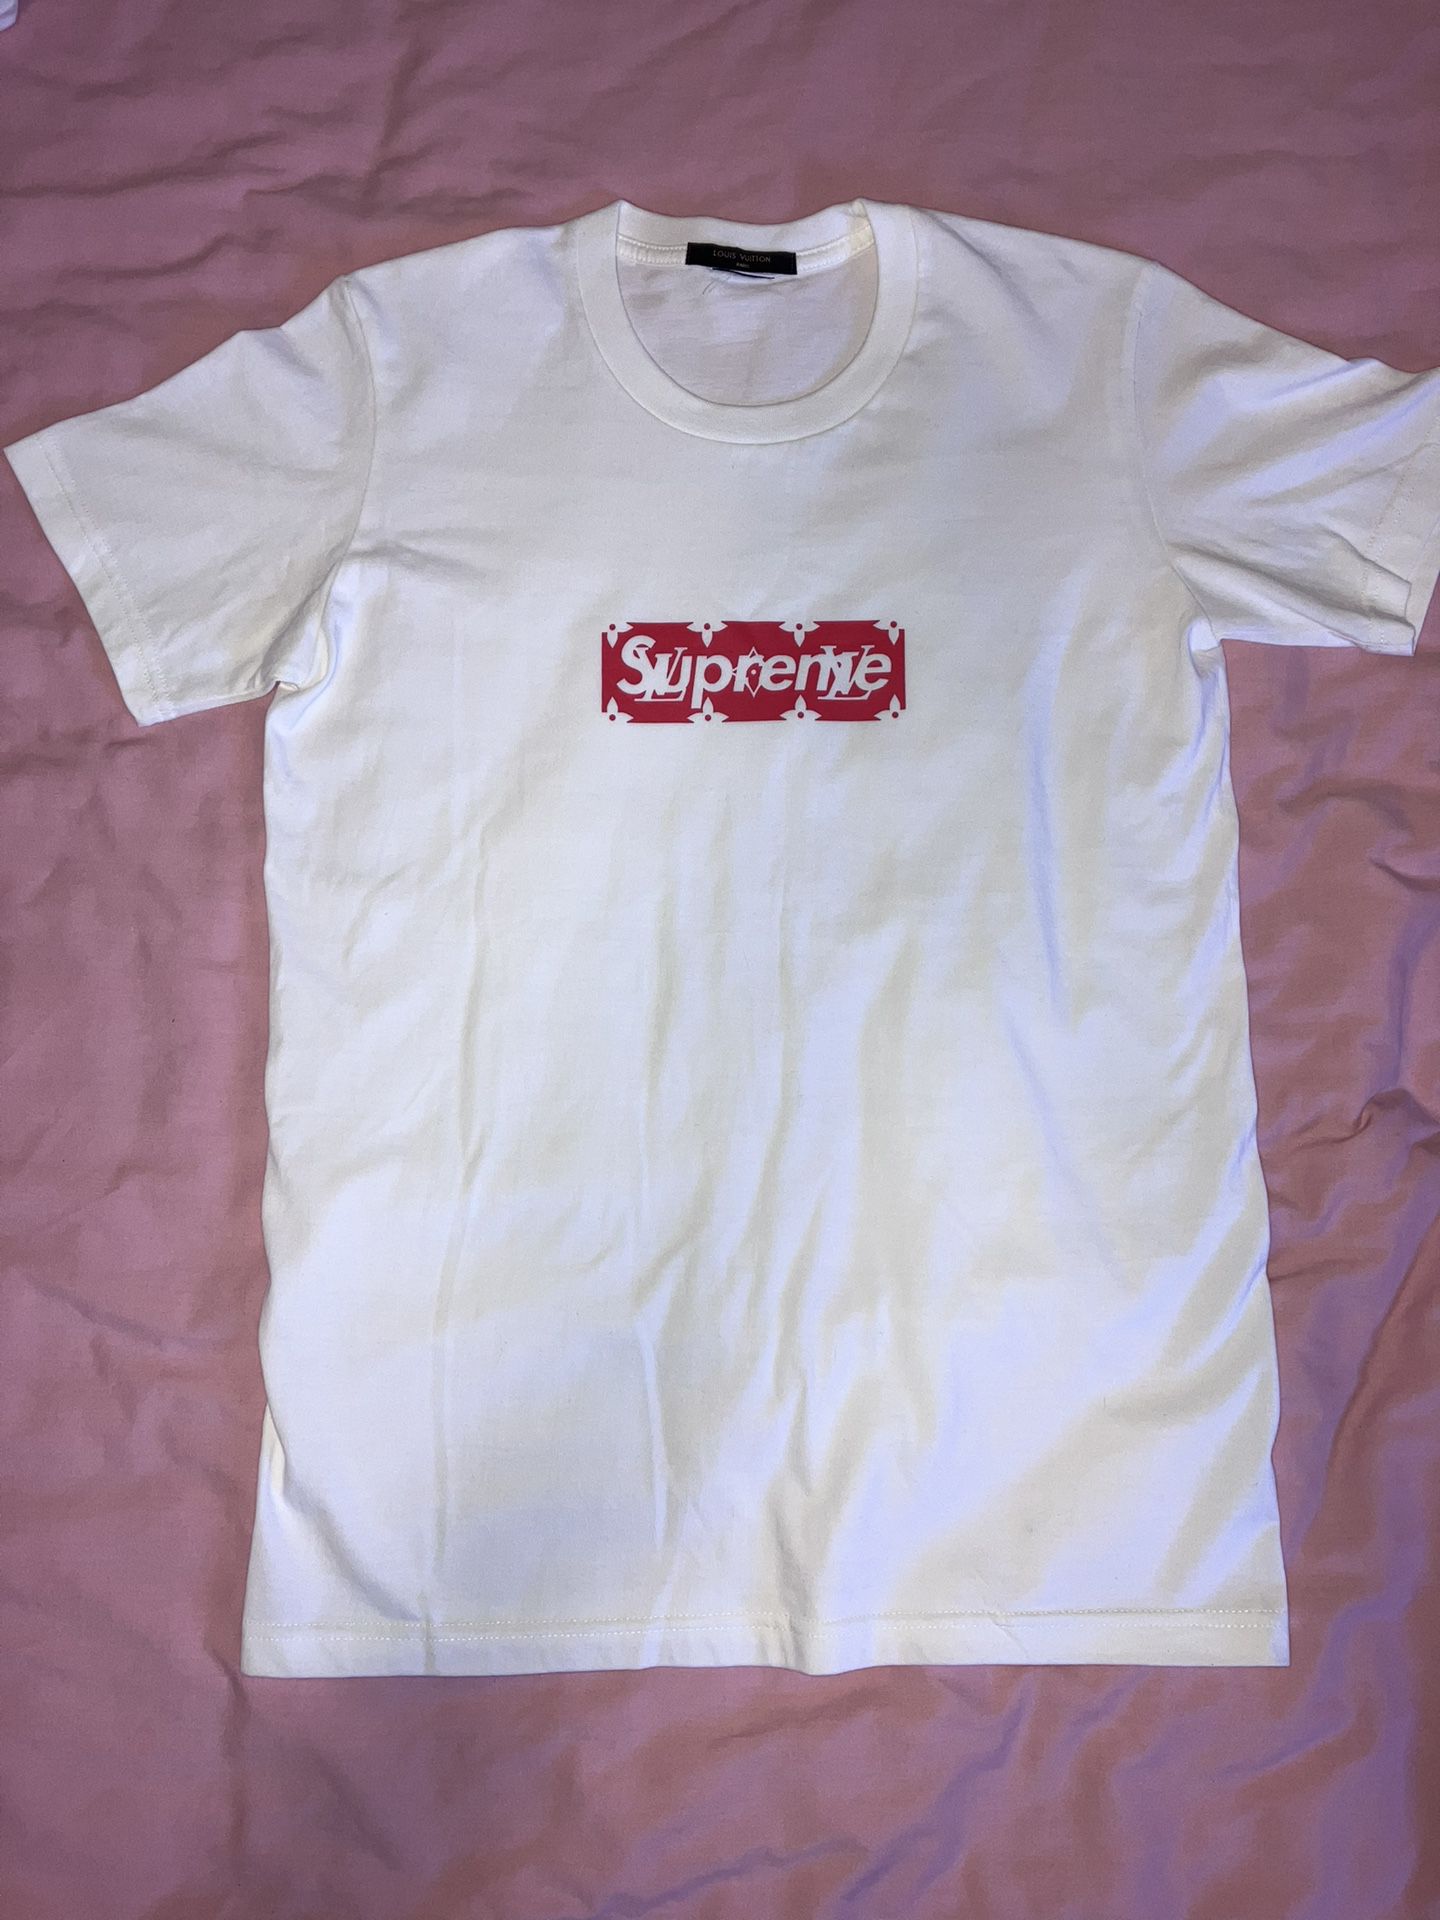 Supreme x Louis Vuitton Box Logo T-Shirt Size Men’s Small